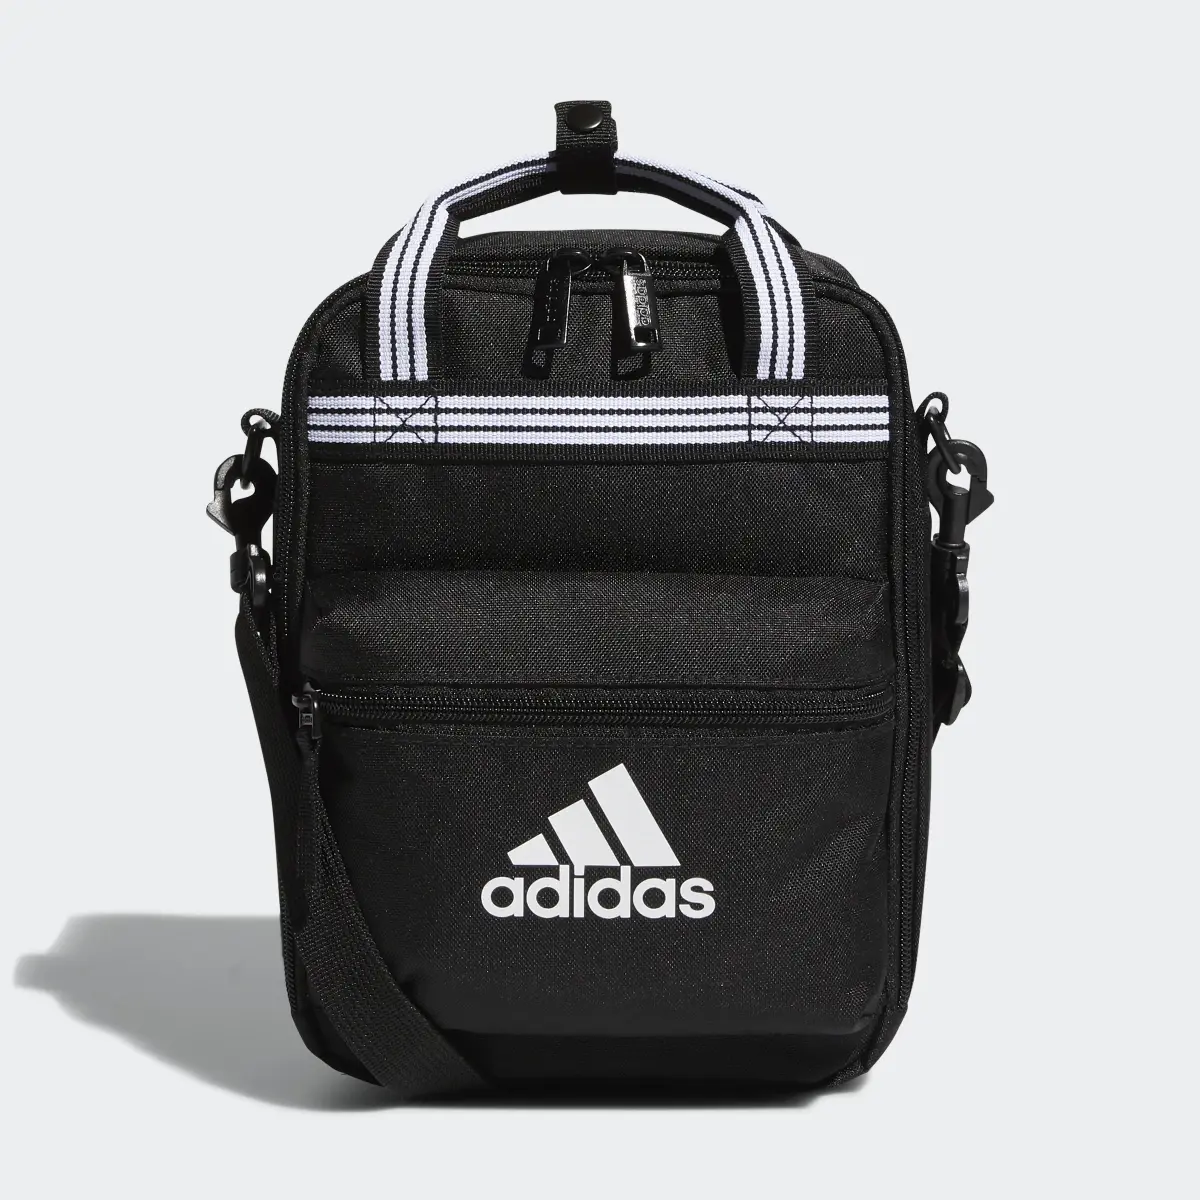 Adidas Squad Lunch Bag. 2